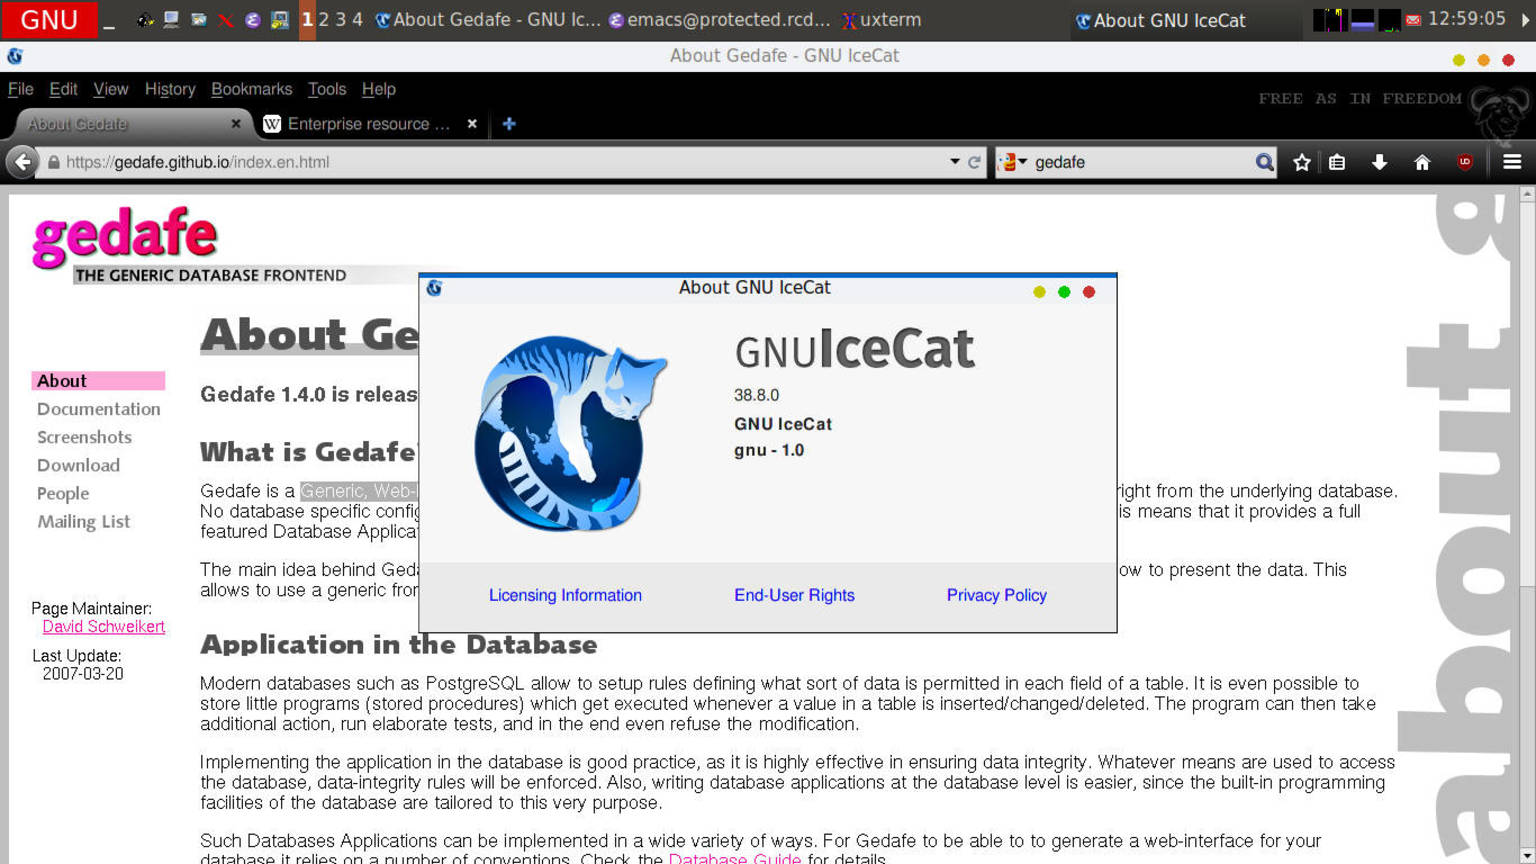 GNU IceCat